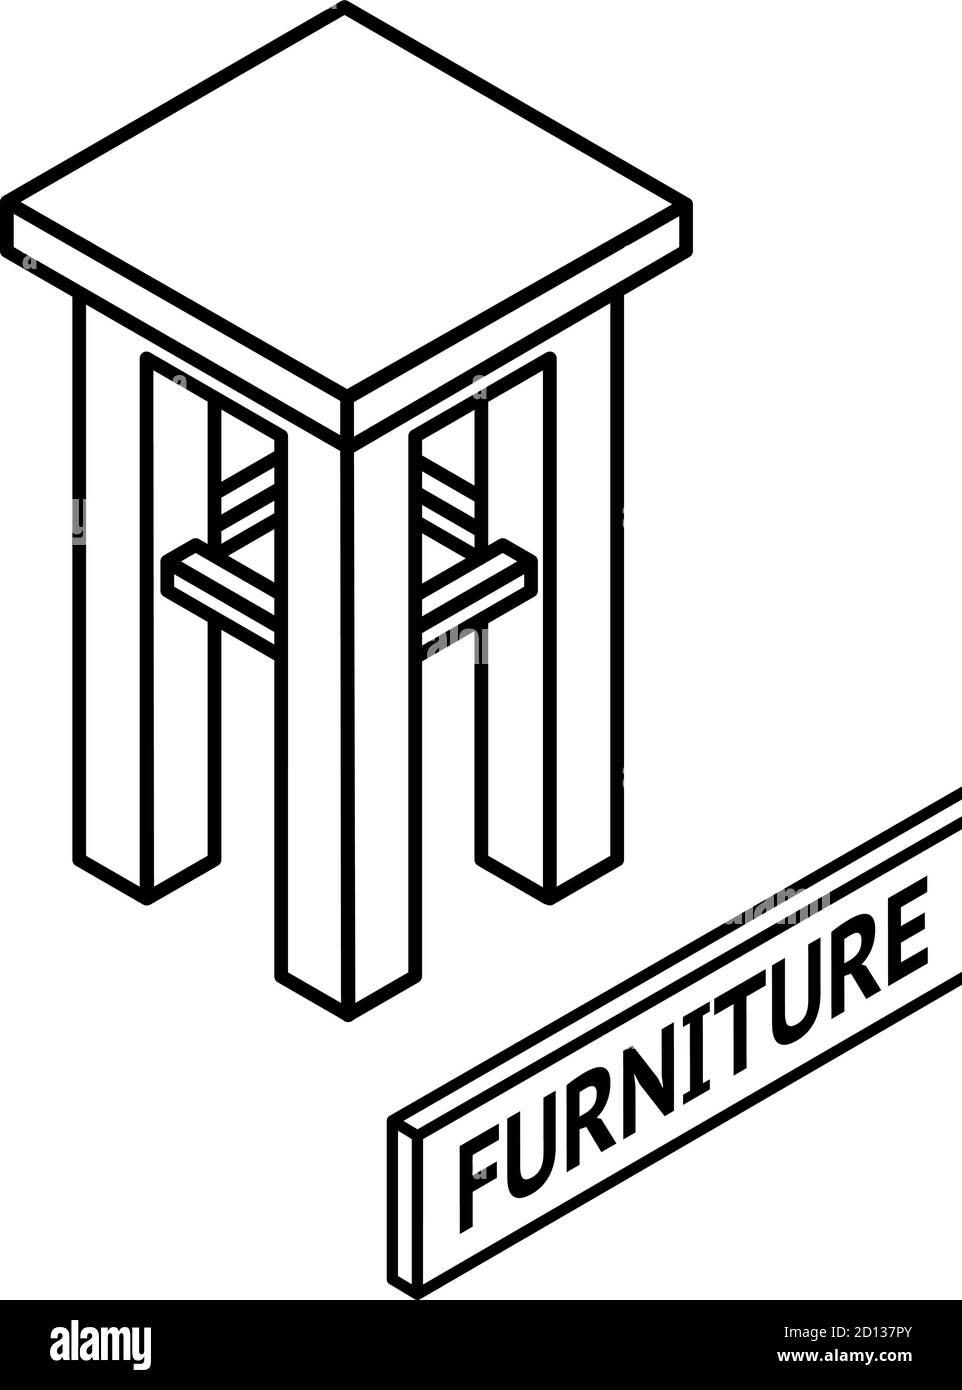 Isometrische Grundrisse Möbel. 3D Linie gezeichnet isometrischer Stuhl.  Weißer Hintergrund Stock-Vektorgrafik - Alamy